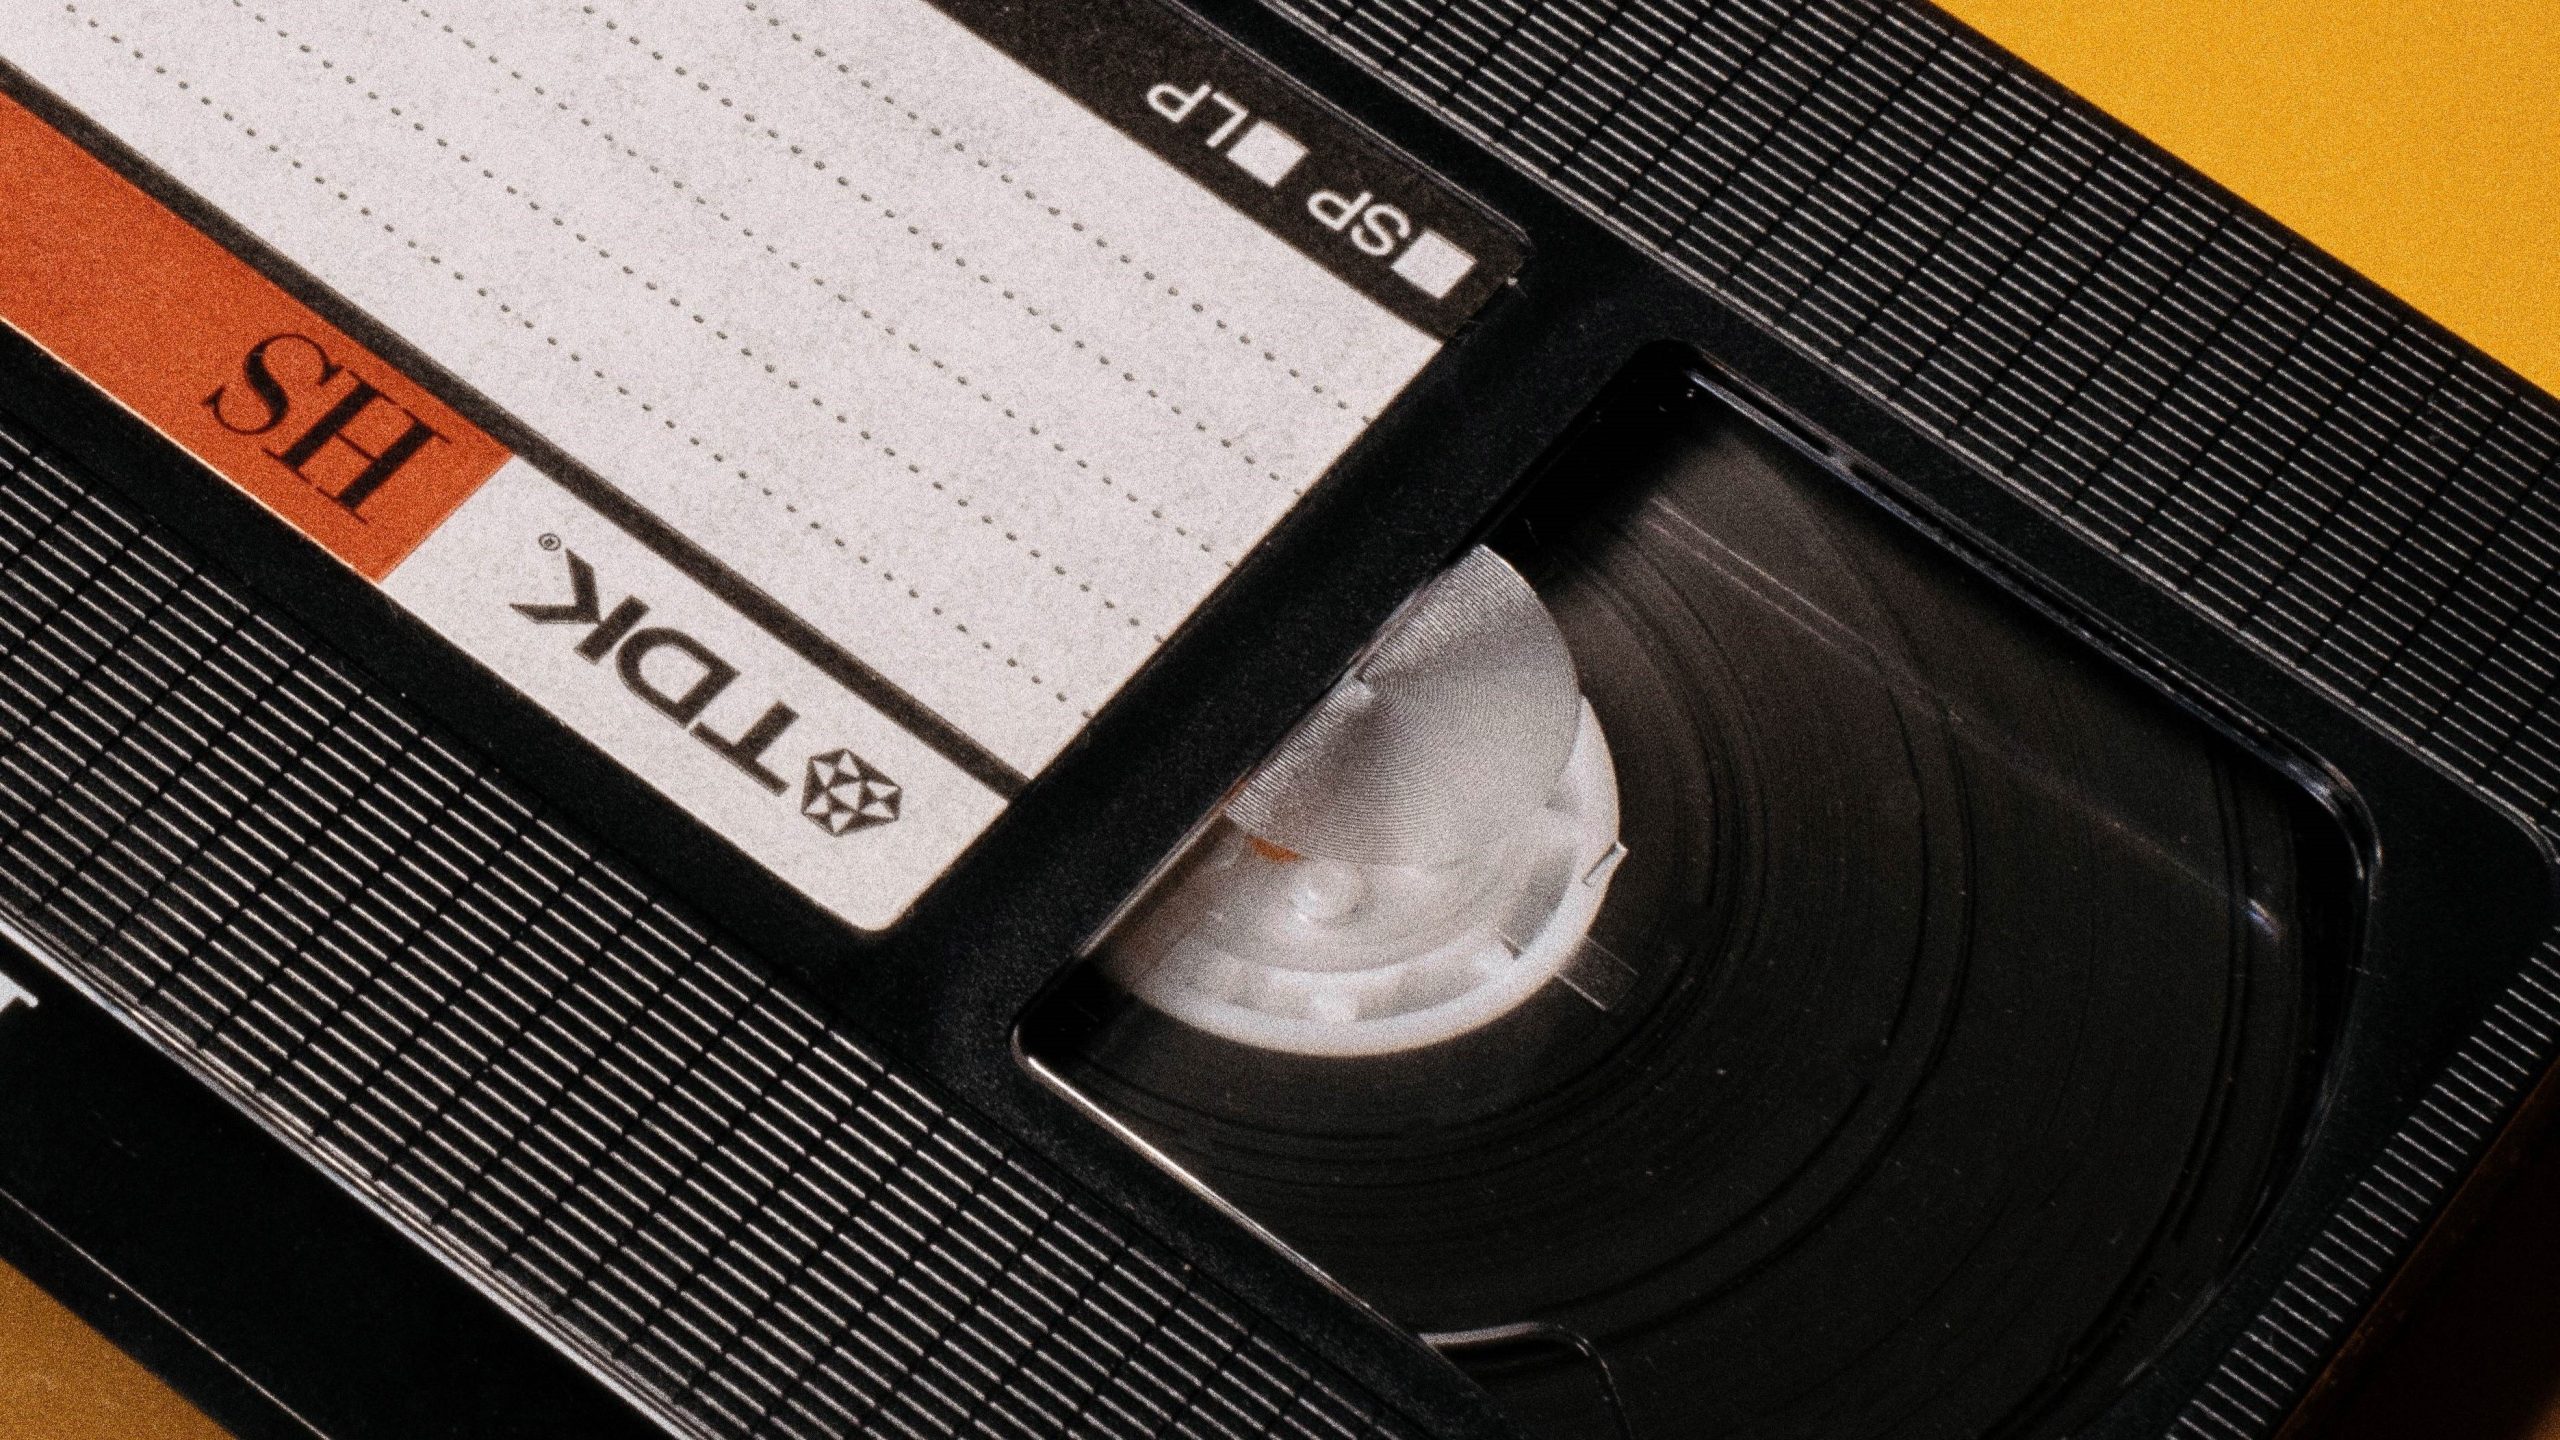 TDK-branded VHS tape.